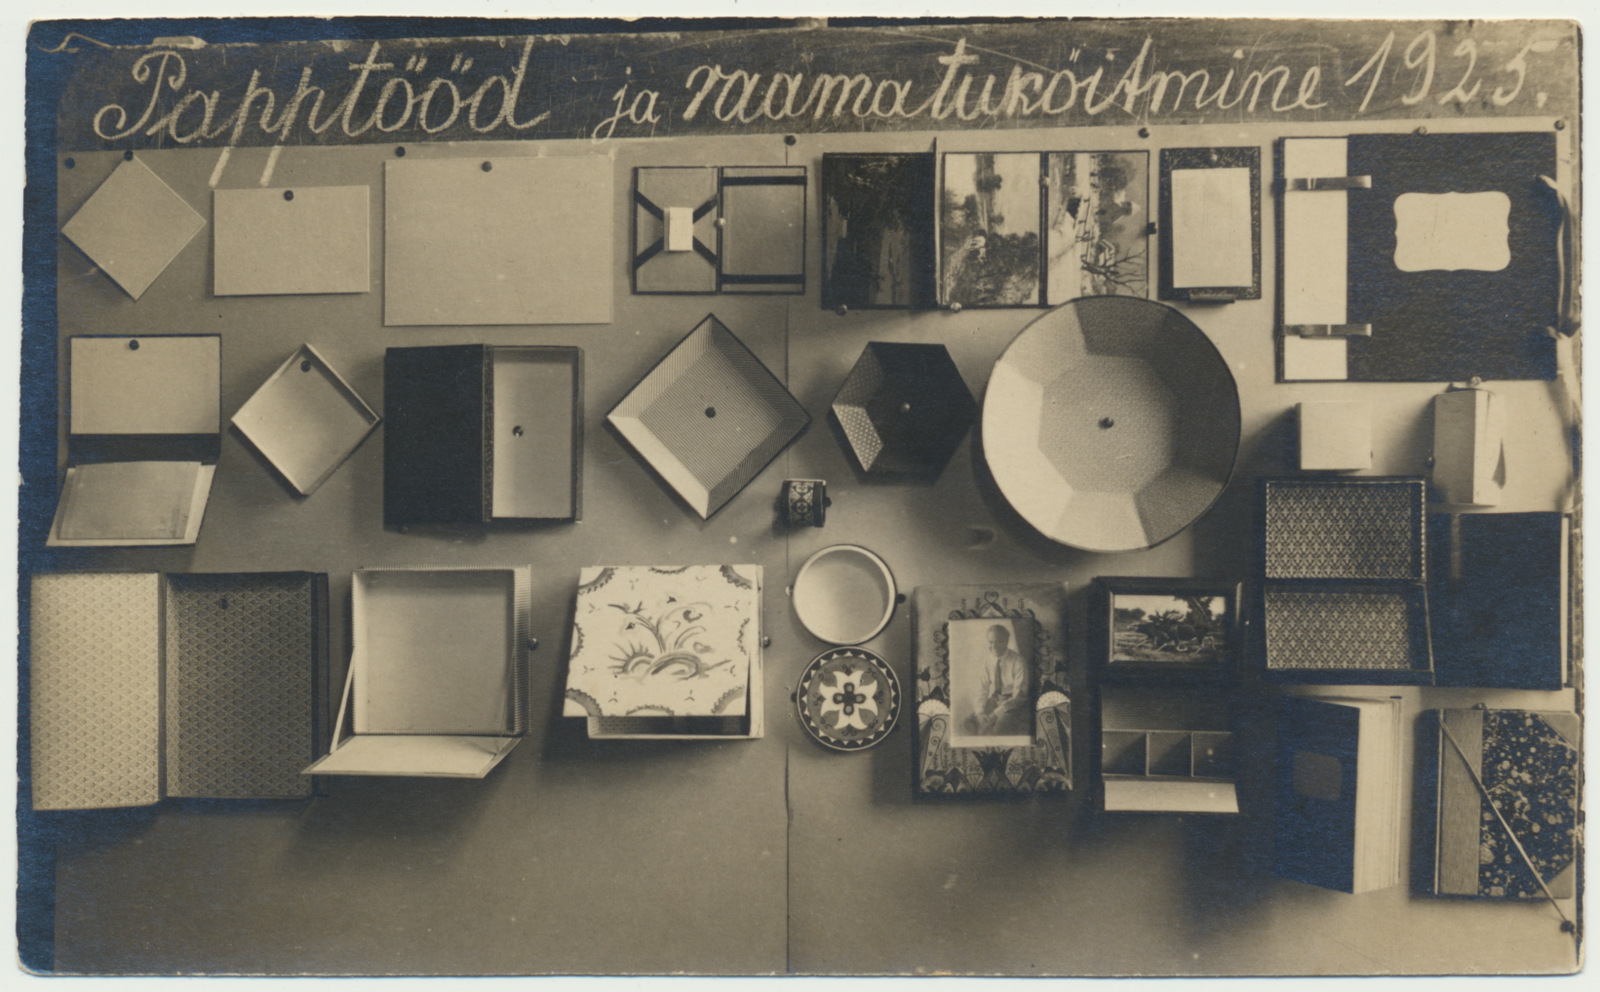 foto, Vana-Põltsamaa vald, Paduvere algkooli õpilaste näitus, 1925, foto N. Busch